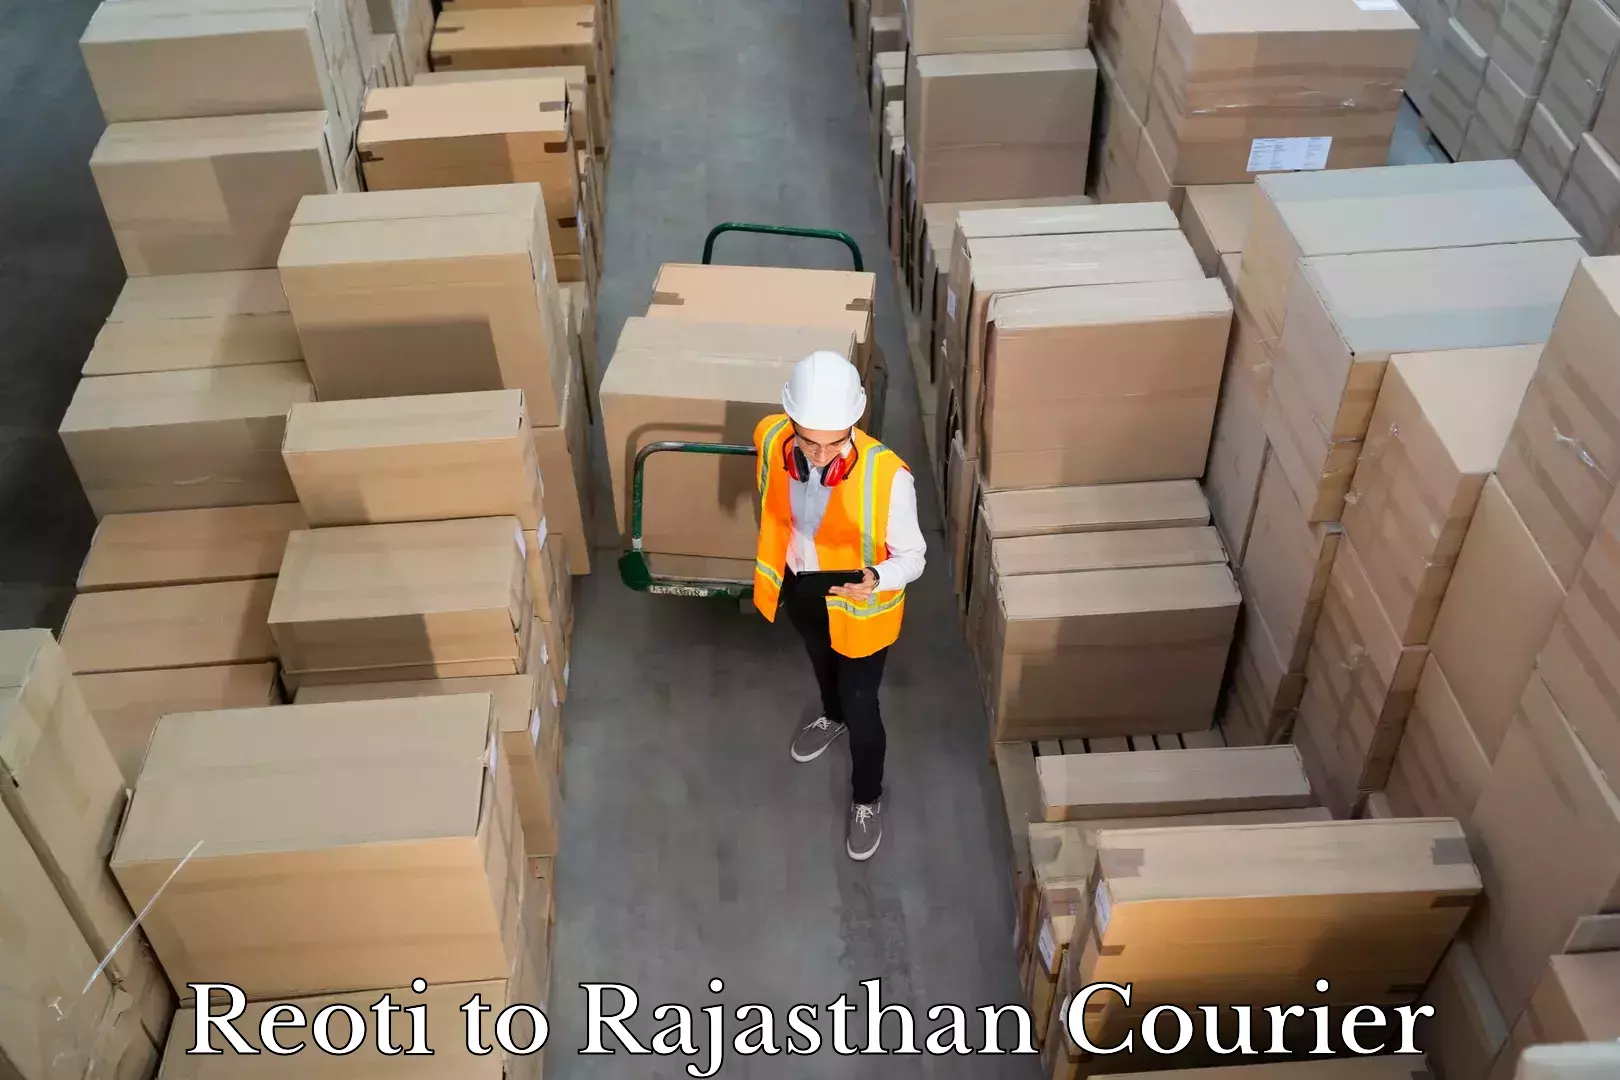 Baggage transport network Reoti to Rajasthan